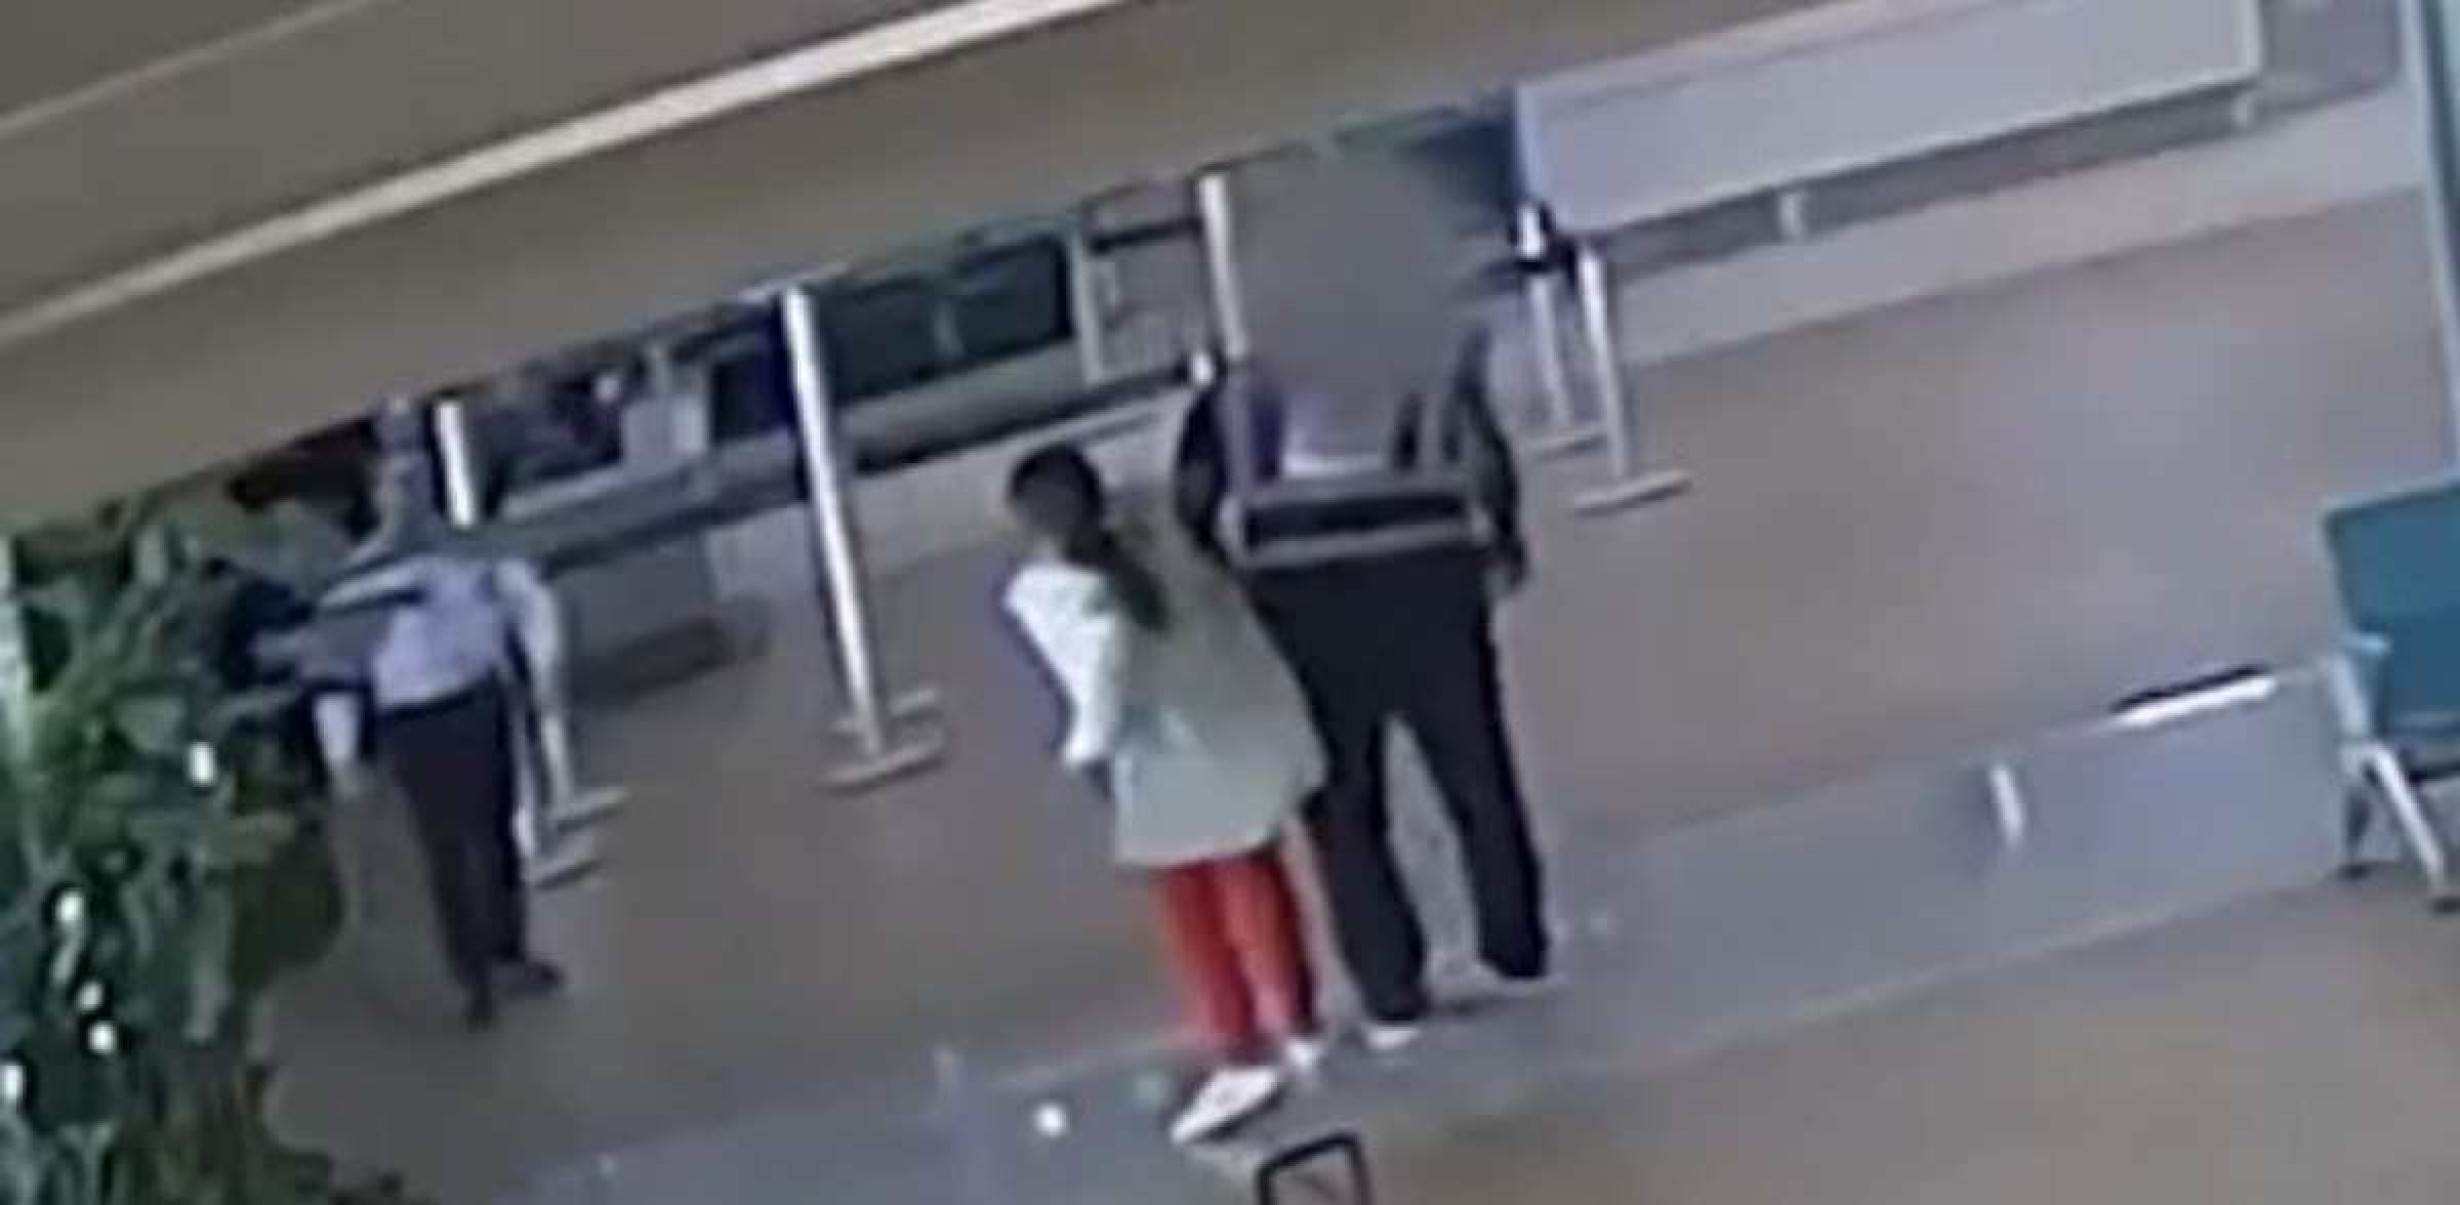 Advogada que injuriou e agrediu funcionário em aeroporto perde cargo na OAB